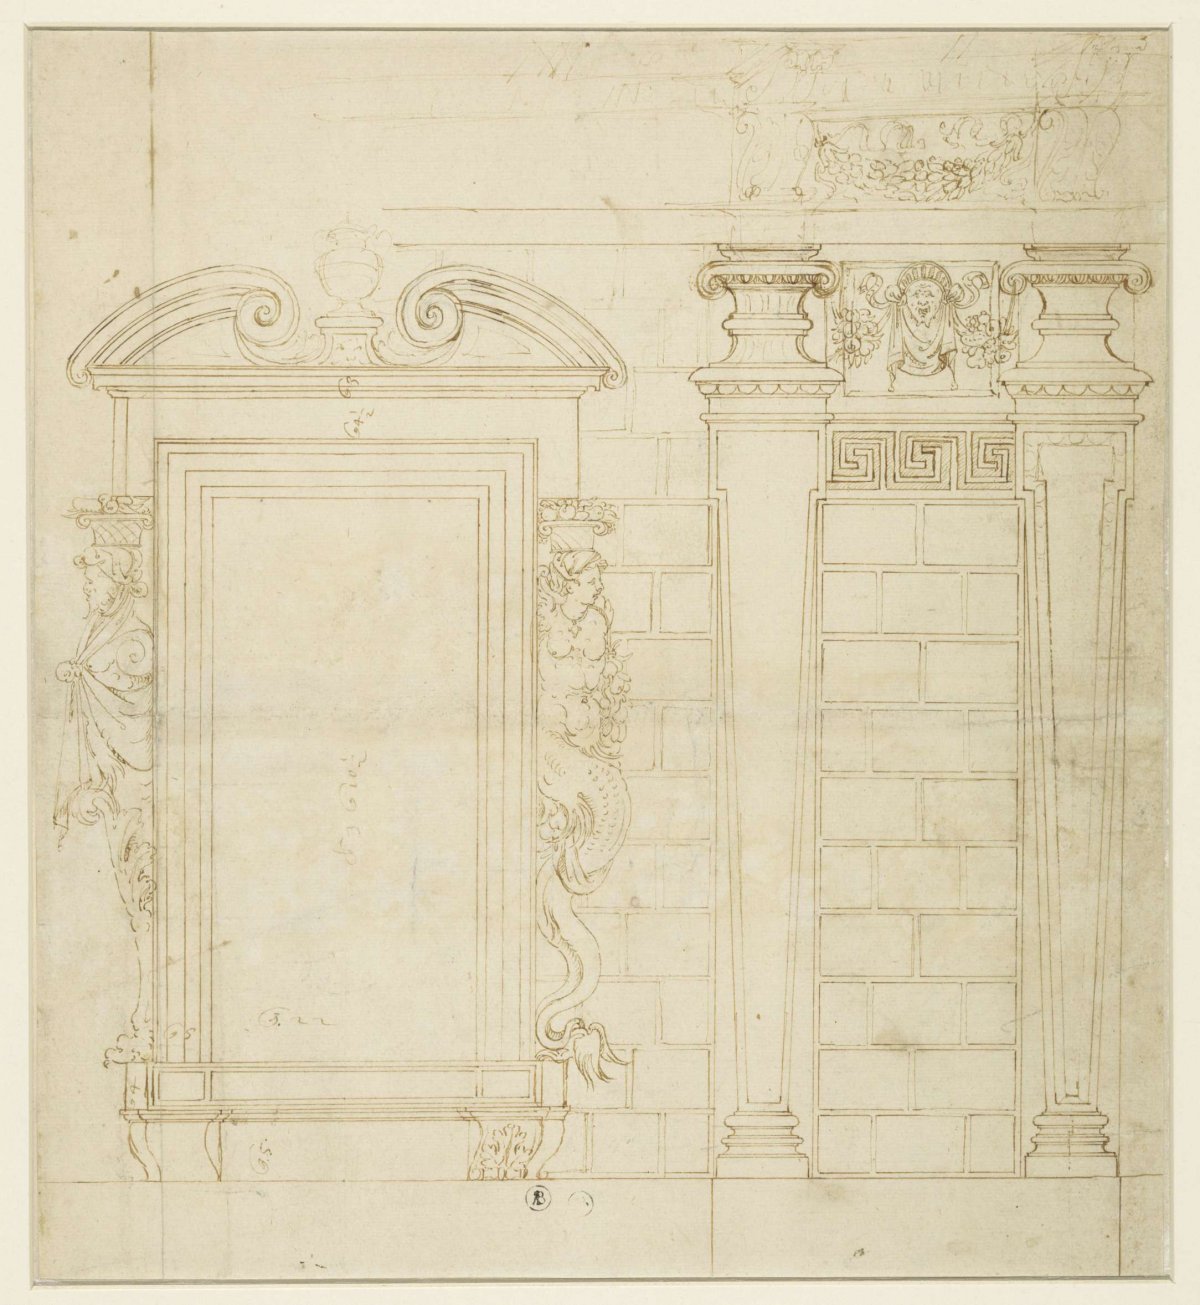 Design for wall and window divisions of the Palazzo dei Collegio dei Giureconsulti, Vincenzo Seregni, 1514 - 1594